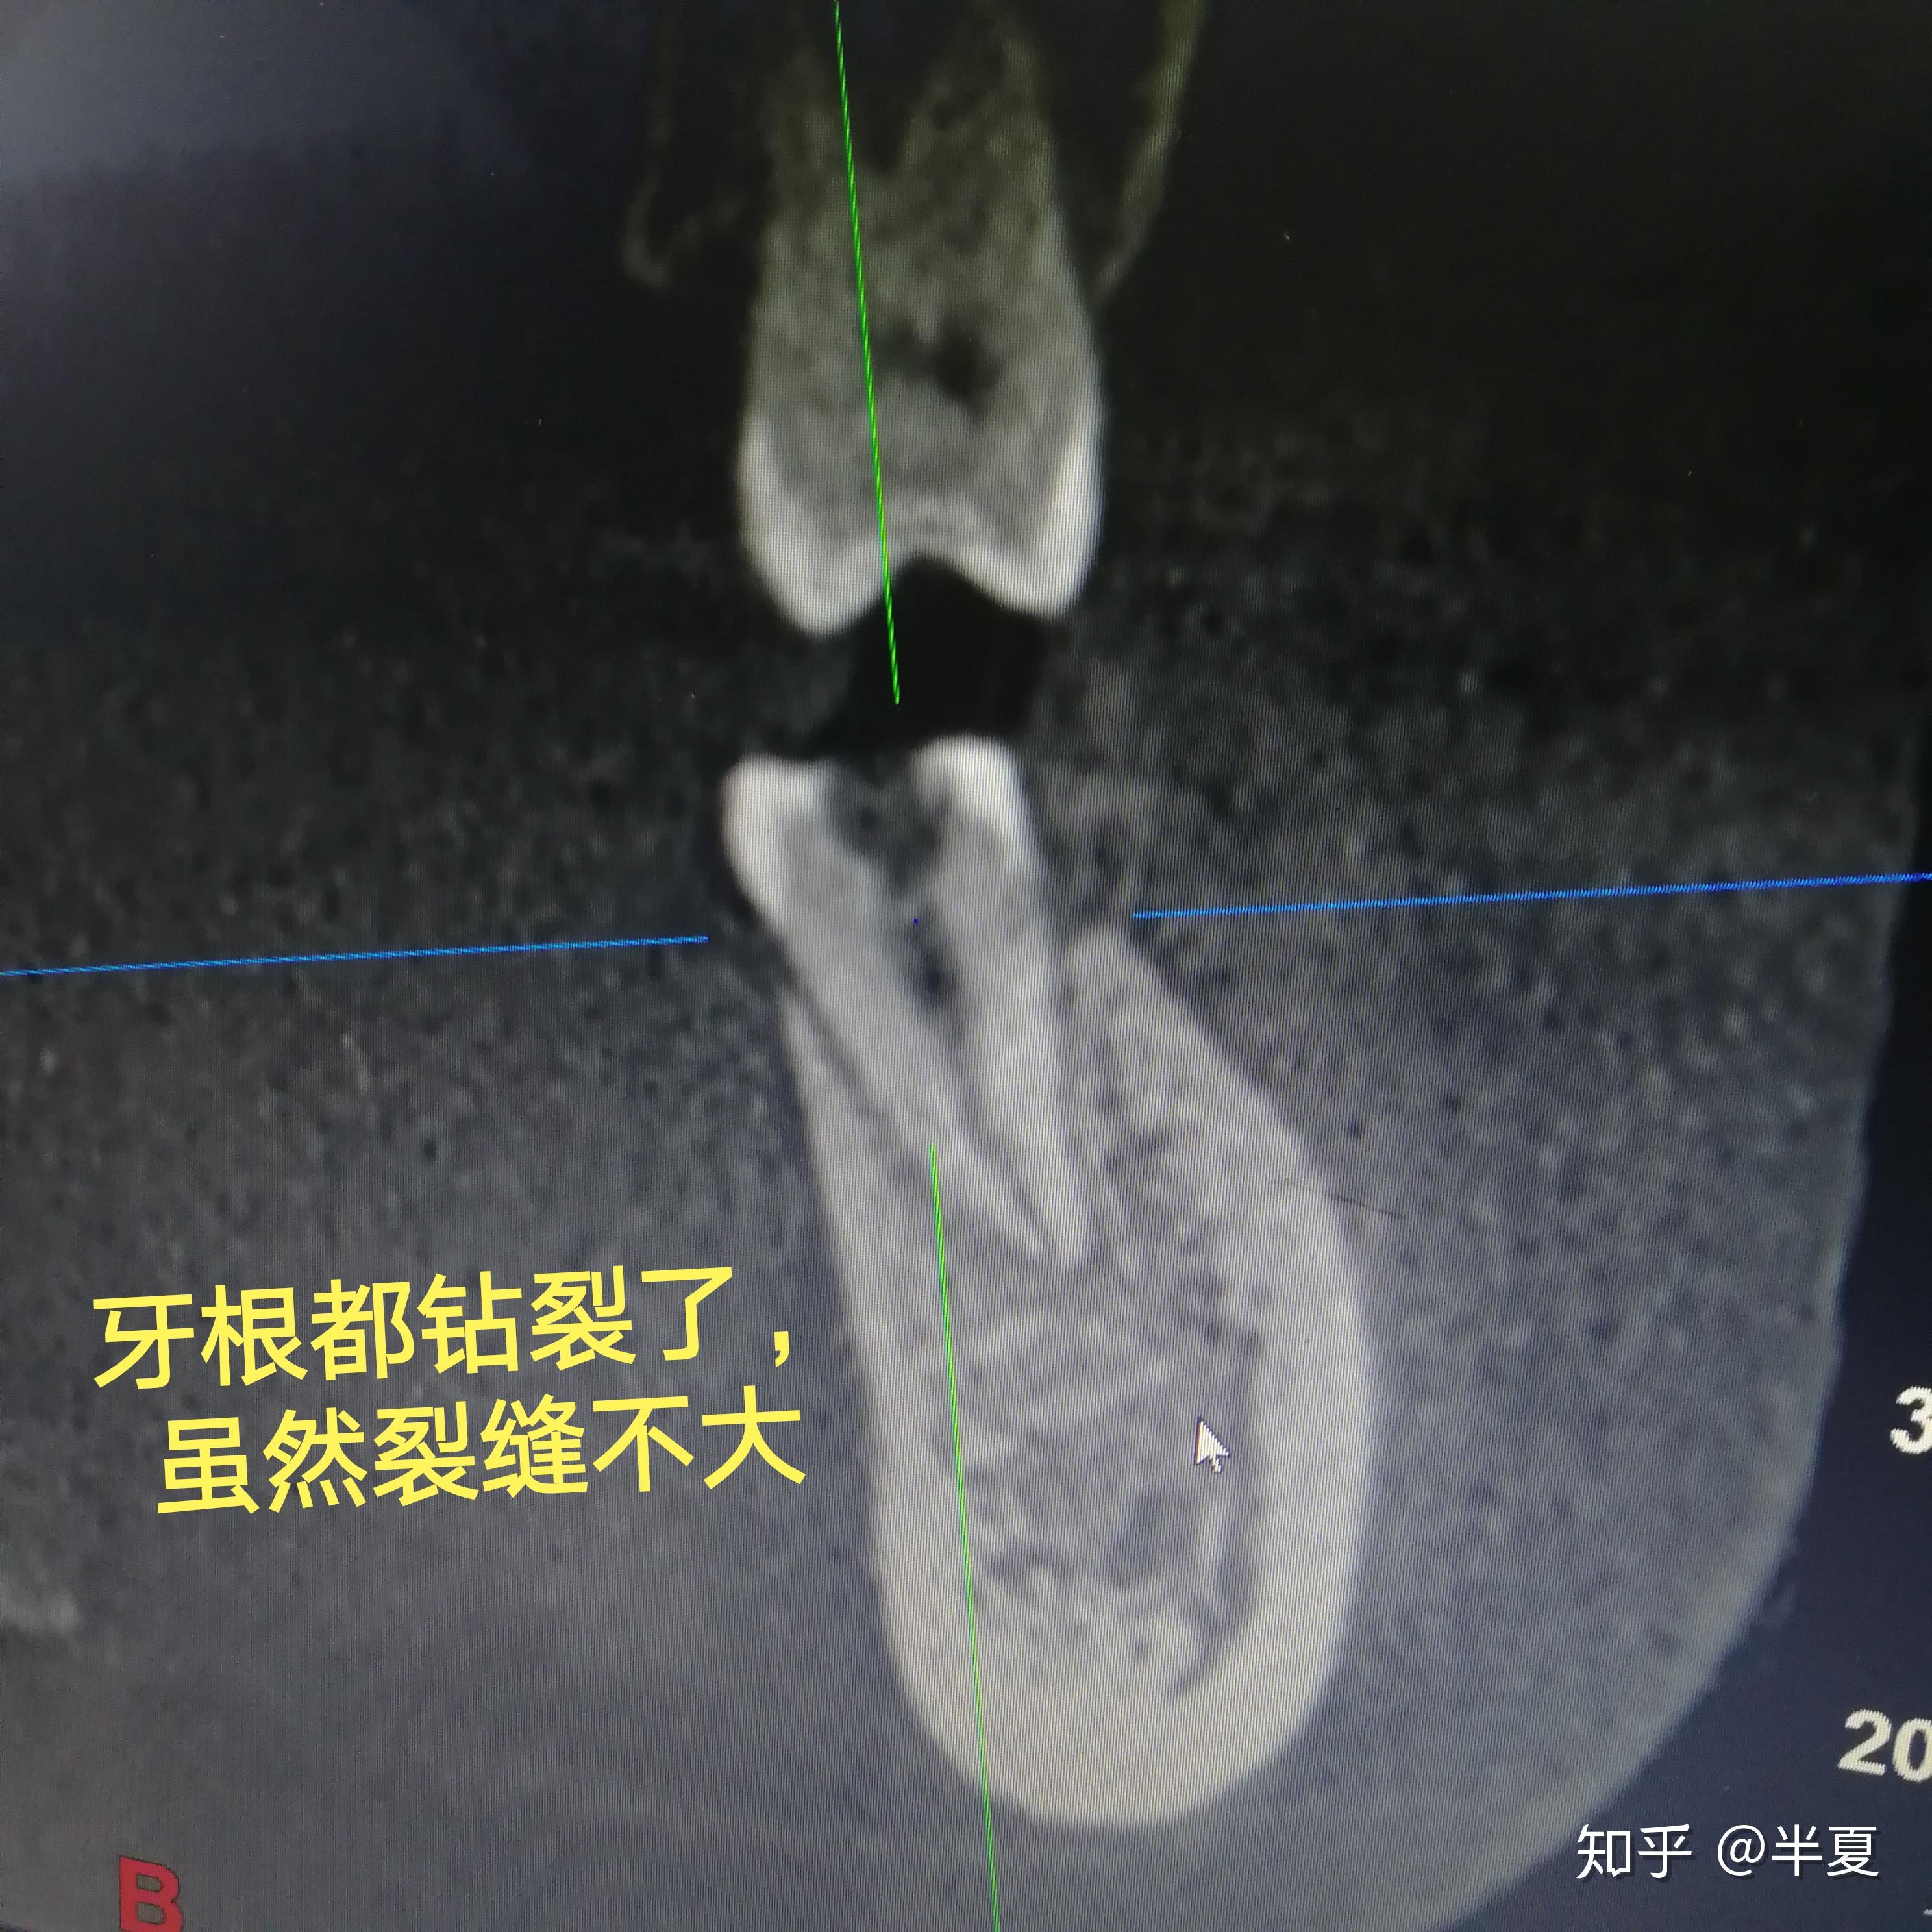 牙内根管治疗过程图片下载 - 觅知网